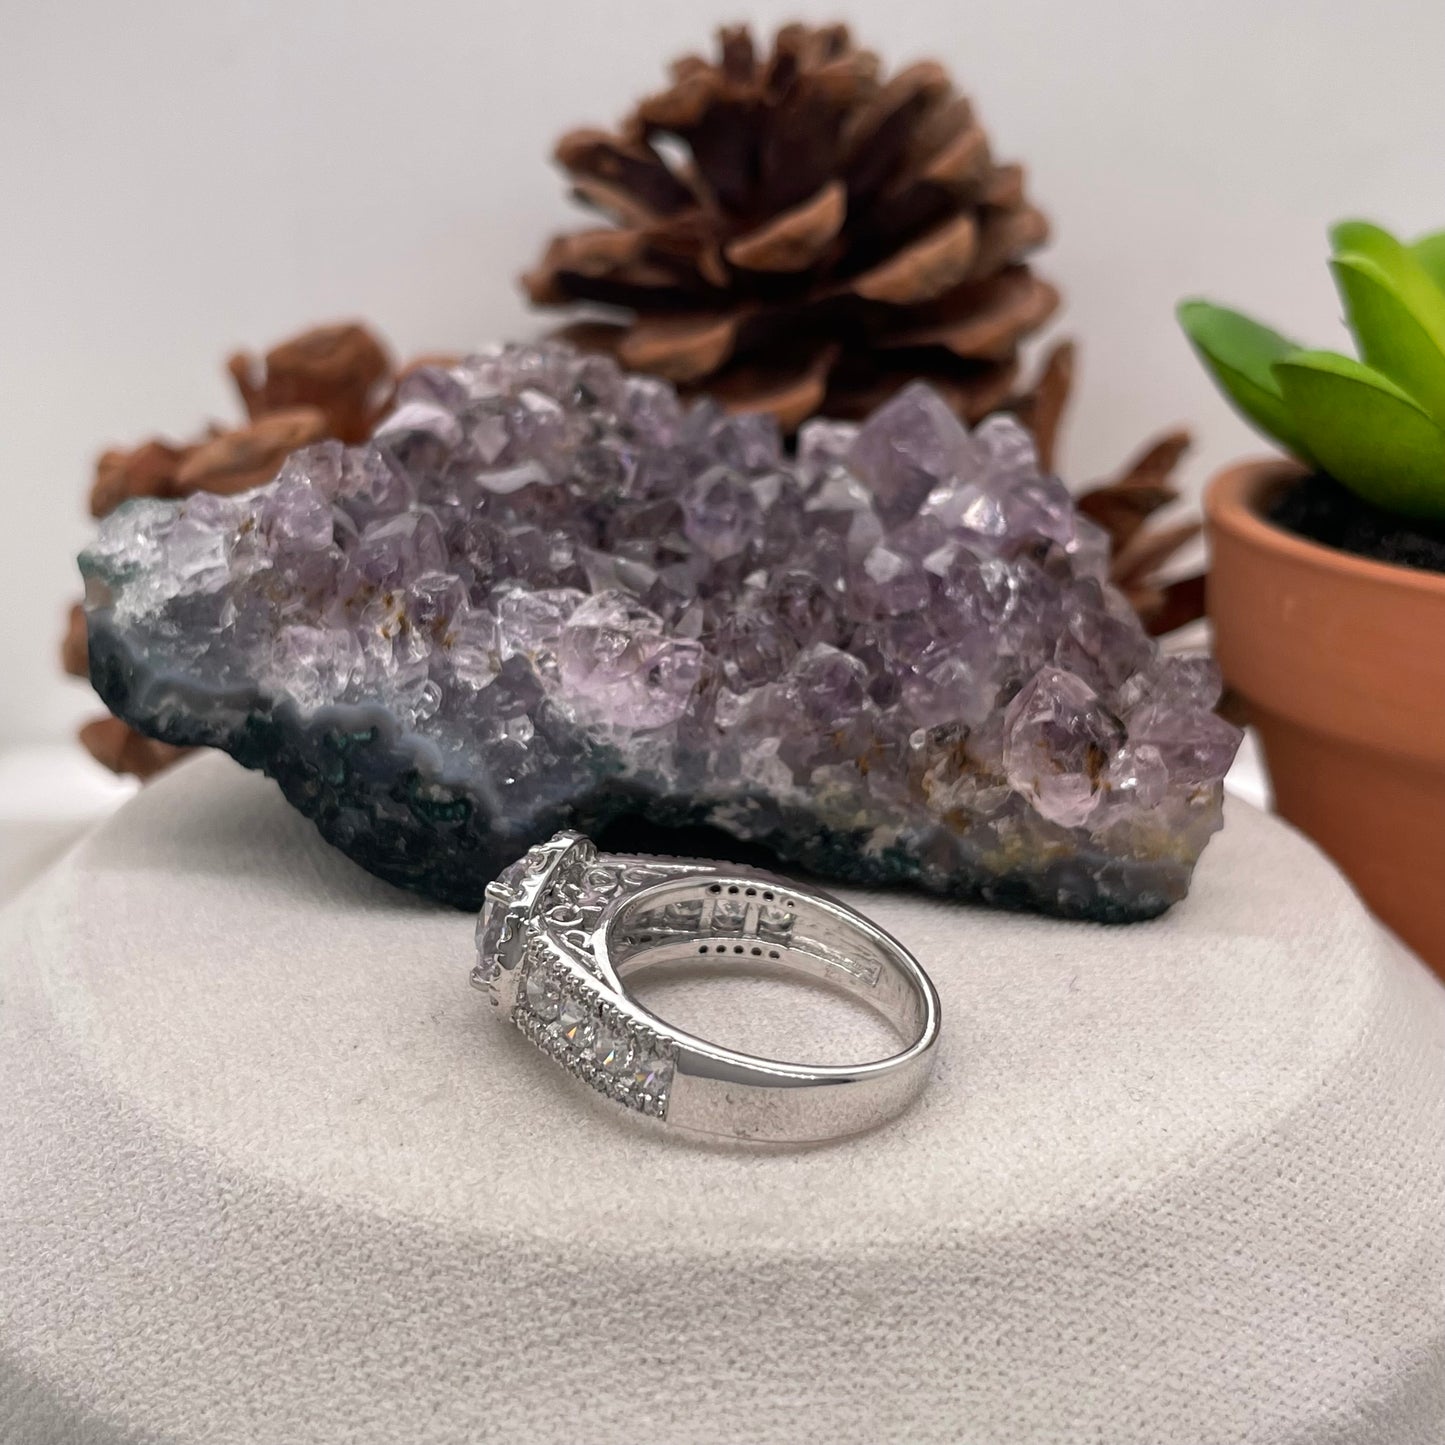 2.60 Carat Round Brilliant Lab Created / Naturel Diamond Engagement Ring Diamond Ring